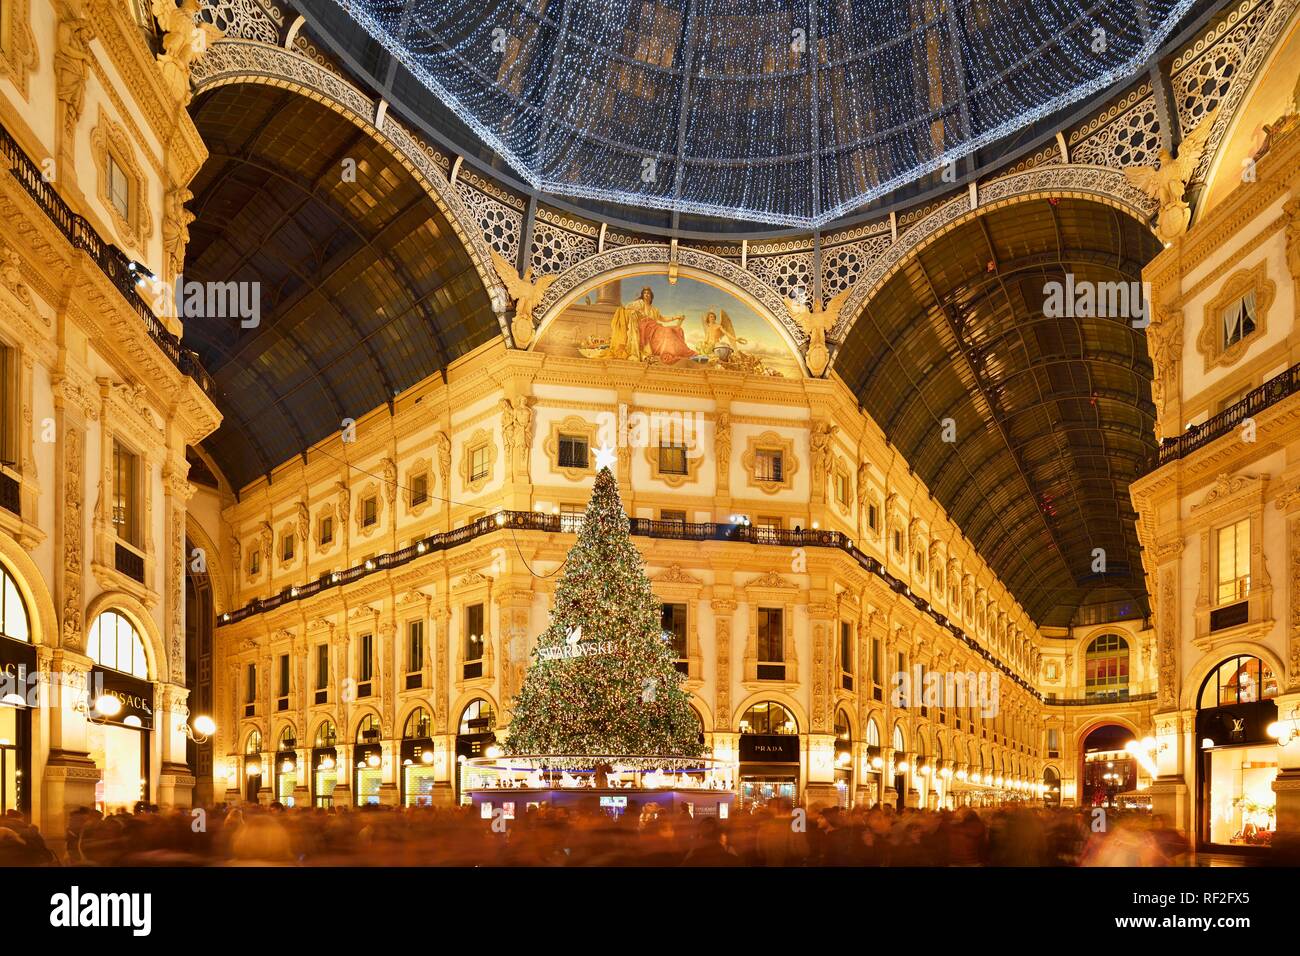 La gente maravillarse con árbol de Navidad y las luces de Navidad en el centro comercial de lujo, galería cubierta de la Galleria Vittorio Emanuele II Foto de stock